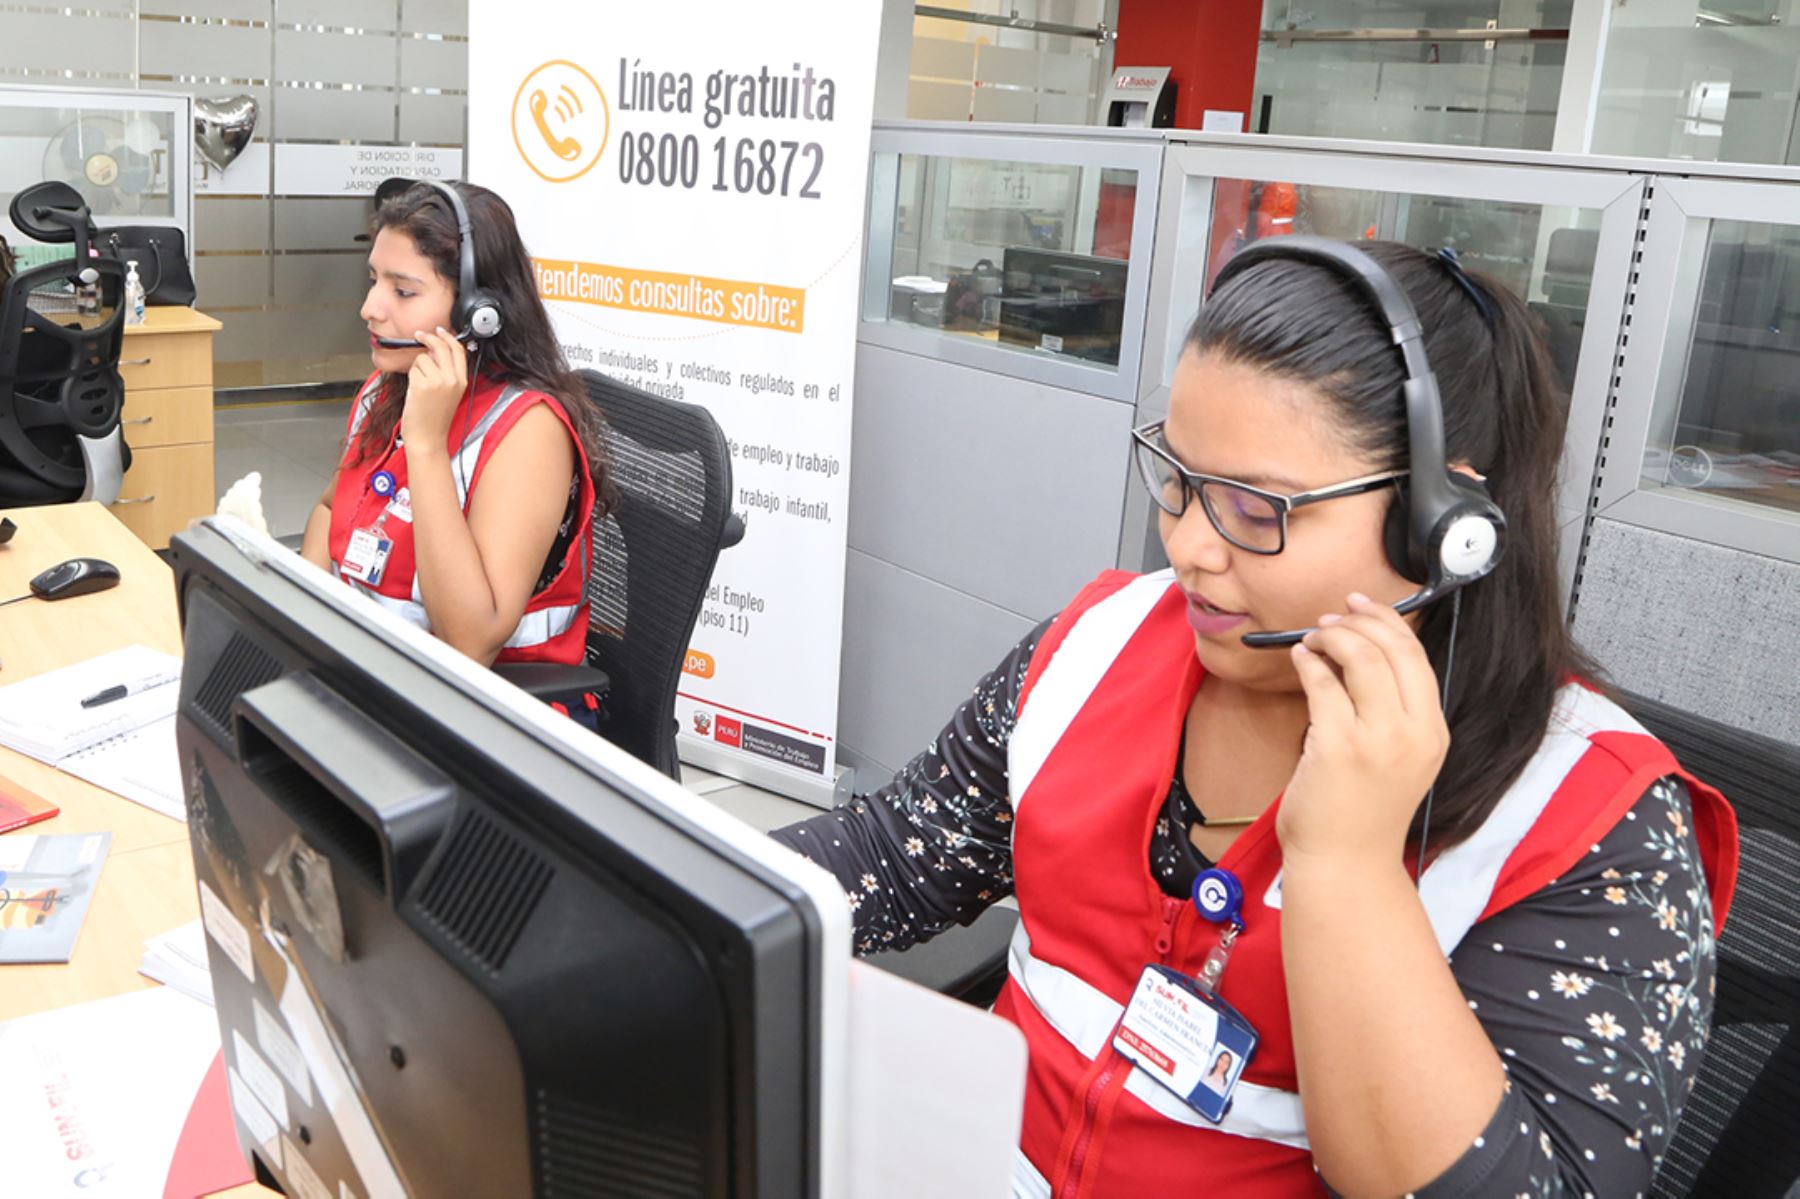 Sunafil pone a de trabajadores teléfono para consultas laborales | Noticias | Agencia Peruana de Noticias